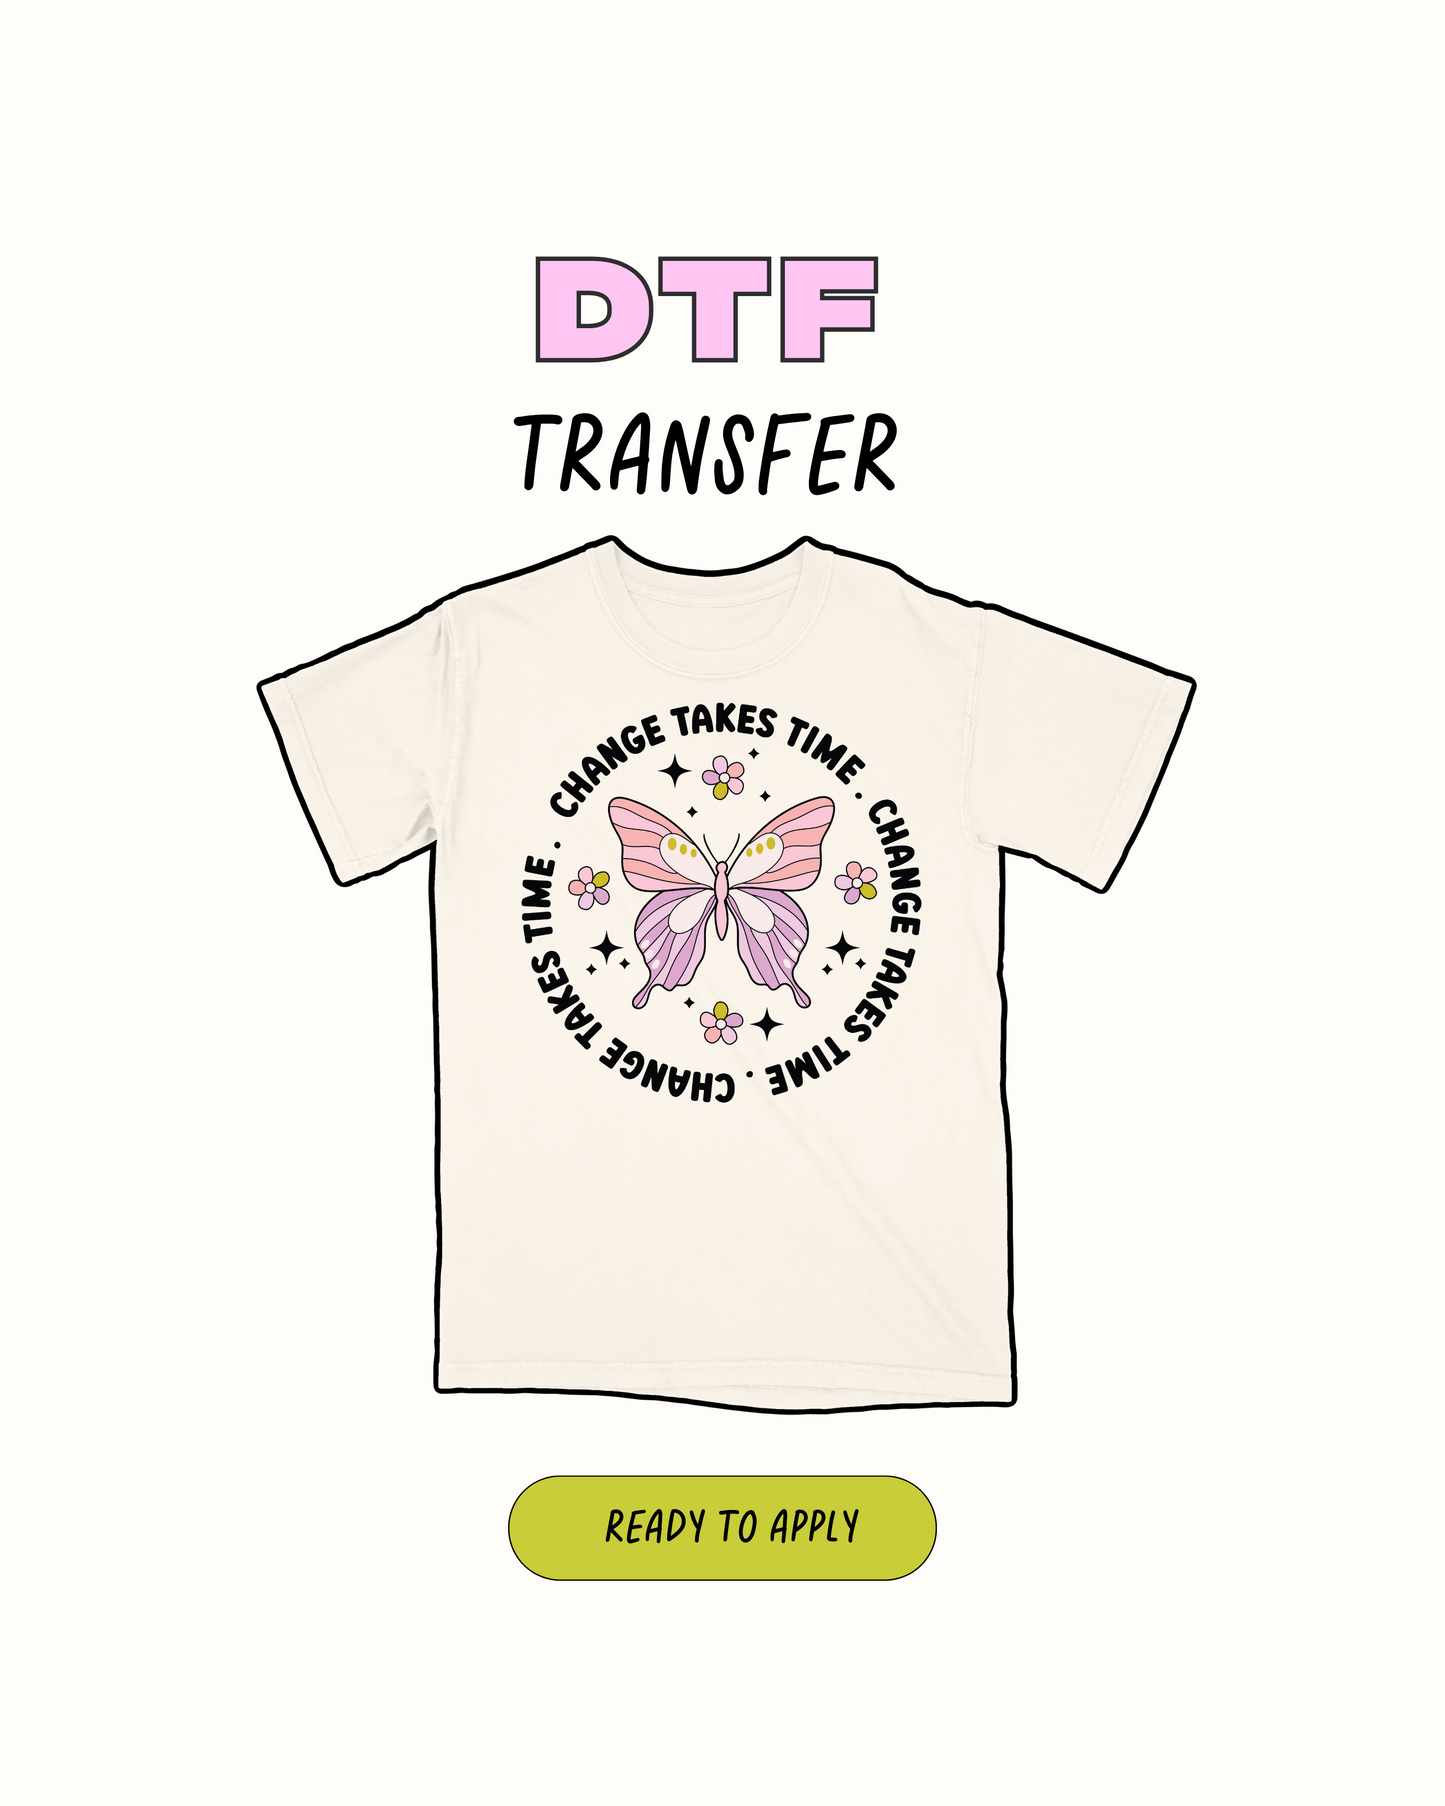 El cambio lleva tiempo - Transferencia DTF